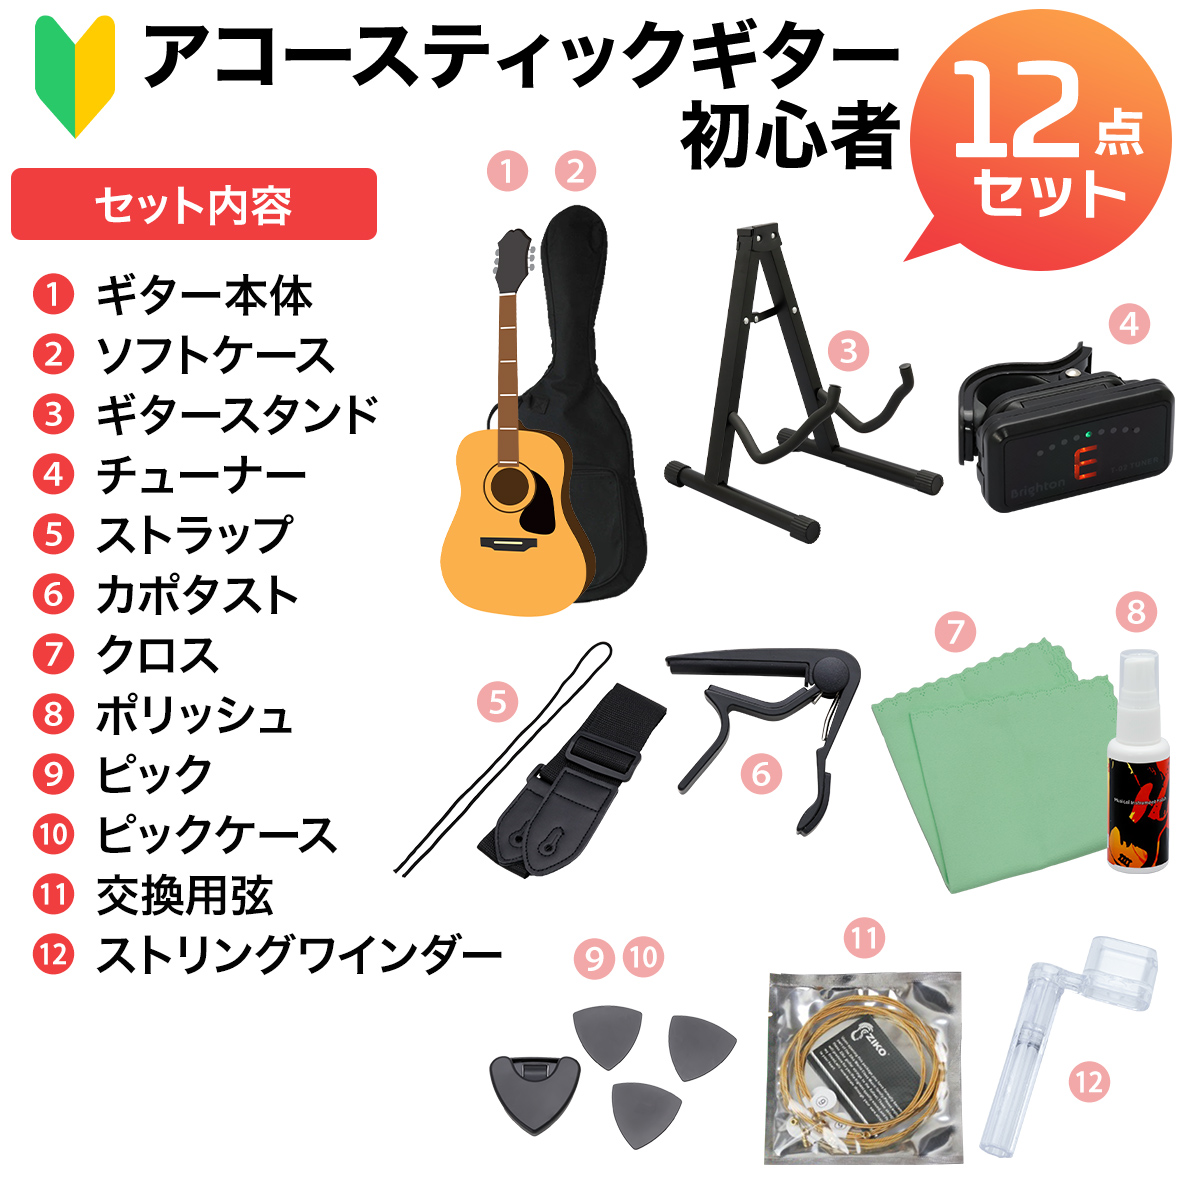 【美品】YAMAHA JR2S ミニギター/ギタレレ ... - rocketmed.co